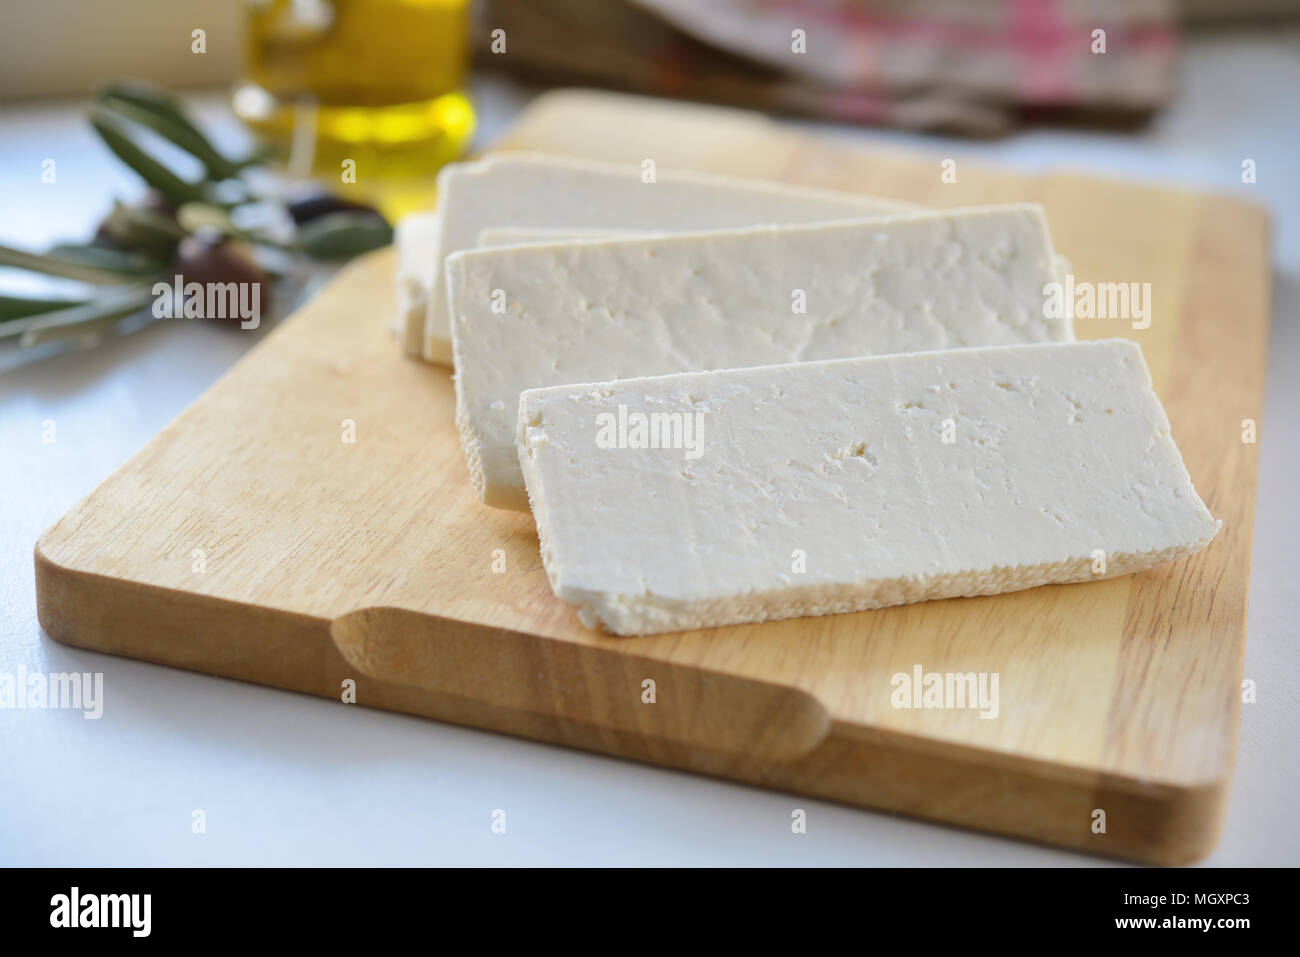 Le fromage Feta sur une planche à découper à l'olives et huile d'olive Banque D'Images